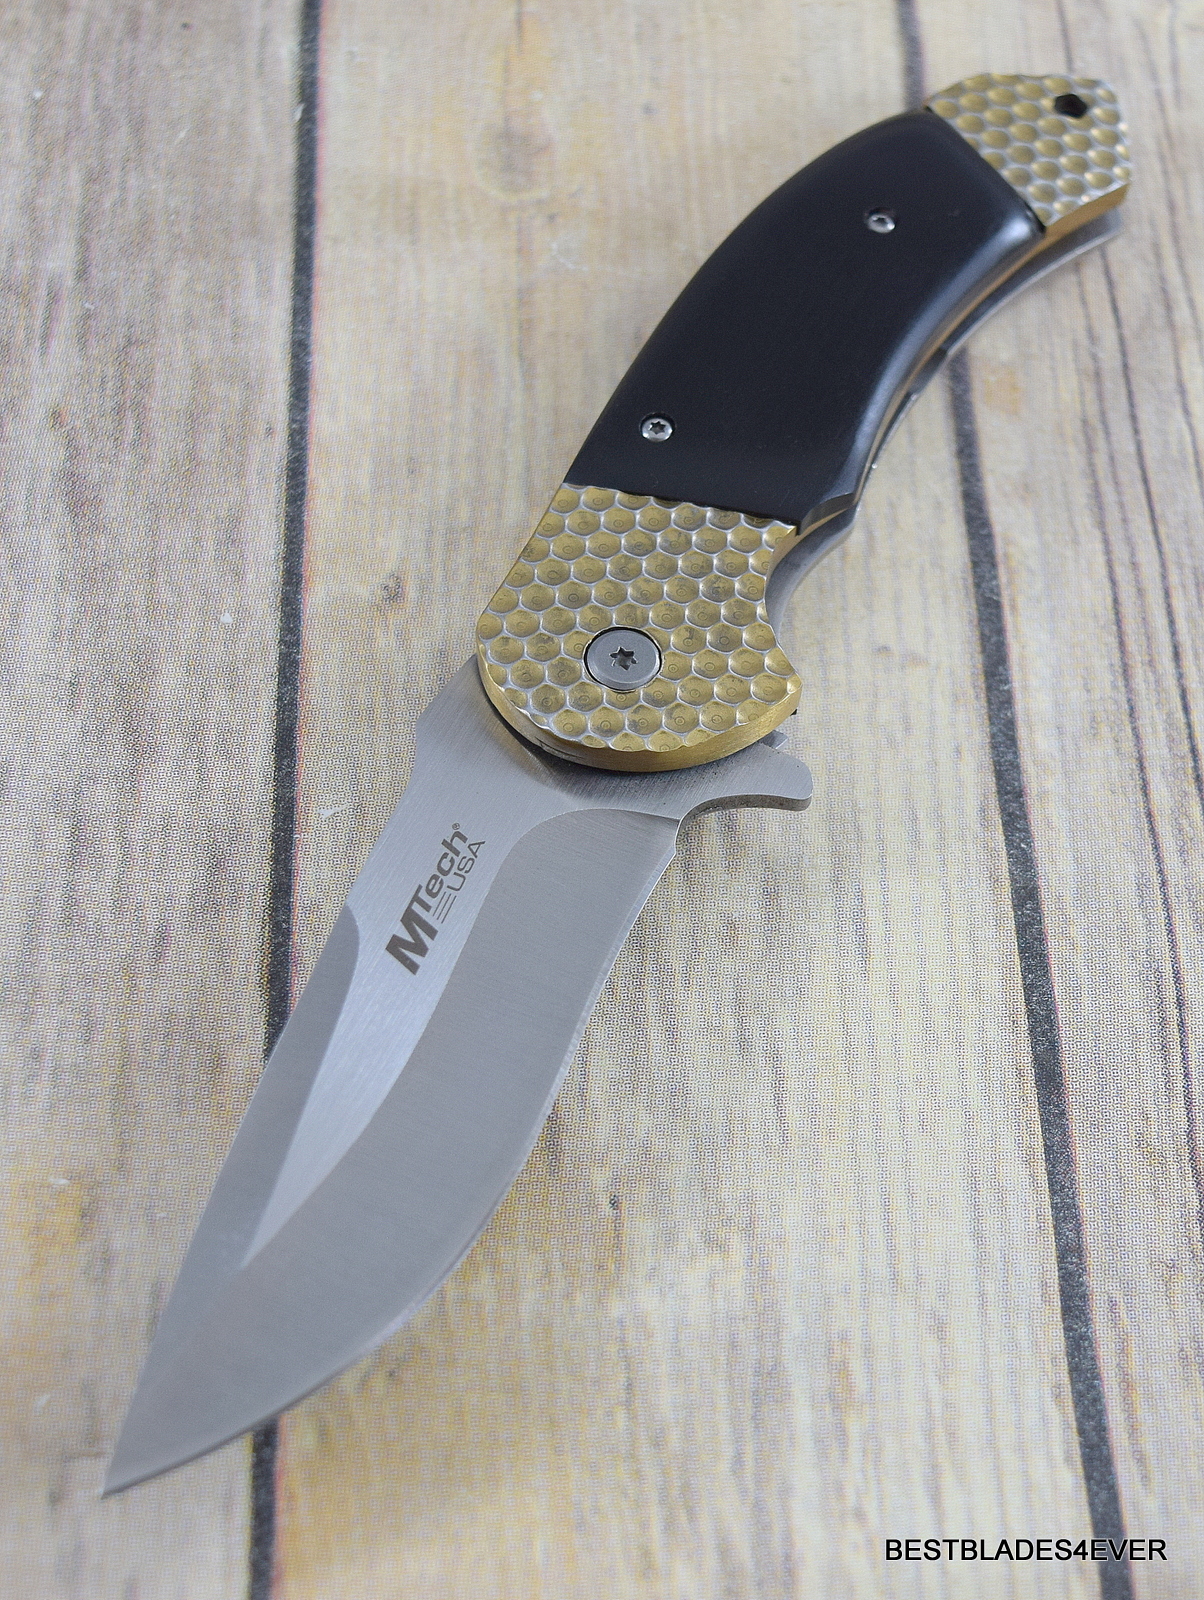 8.25" MTECH STEEL HANDLE SPRING ASSISTED KNIFE POCKET CLIP RAZOR SHARP BLADE